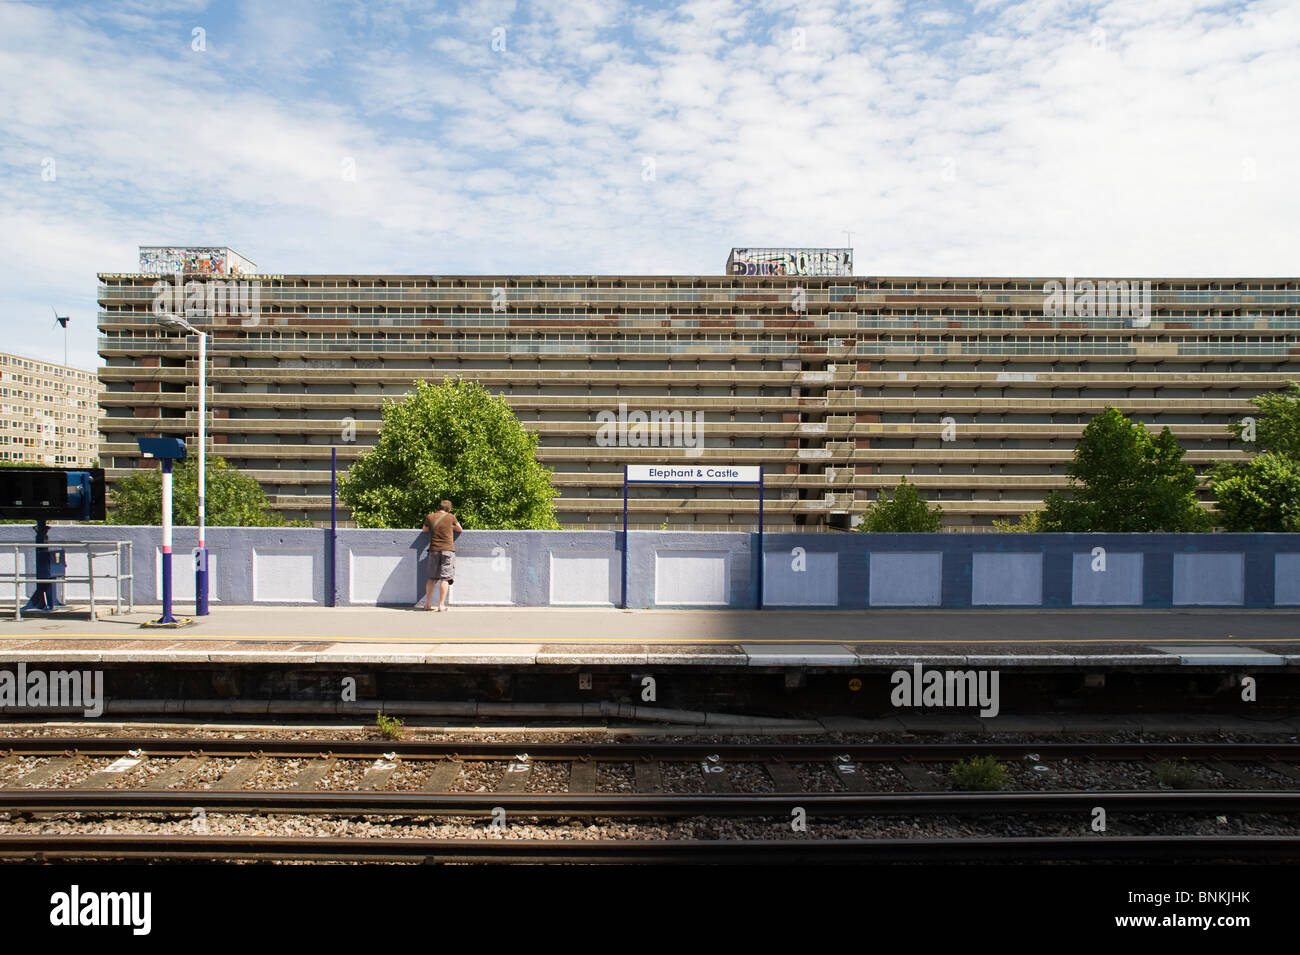 Elefant und Burg Bahnhof, London SE1, mit dem Aylesbury Nachlass hinter. Stockfoto